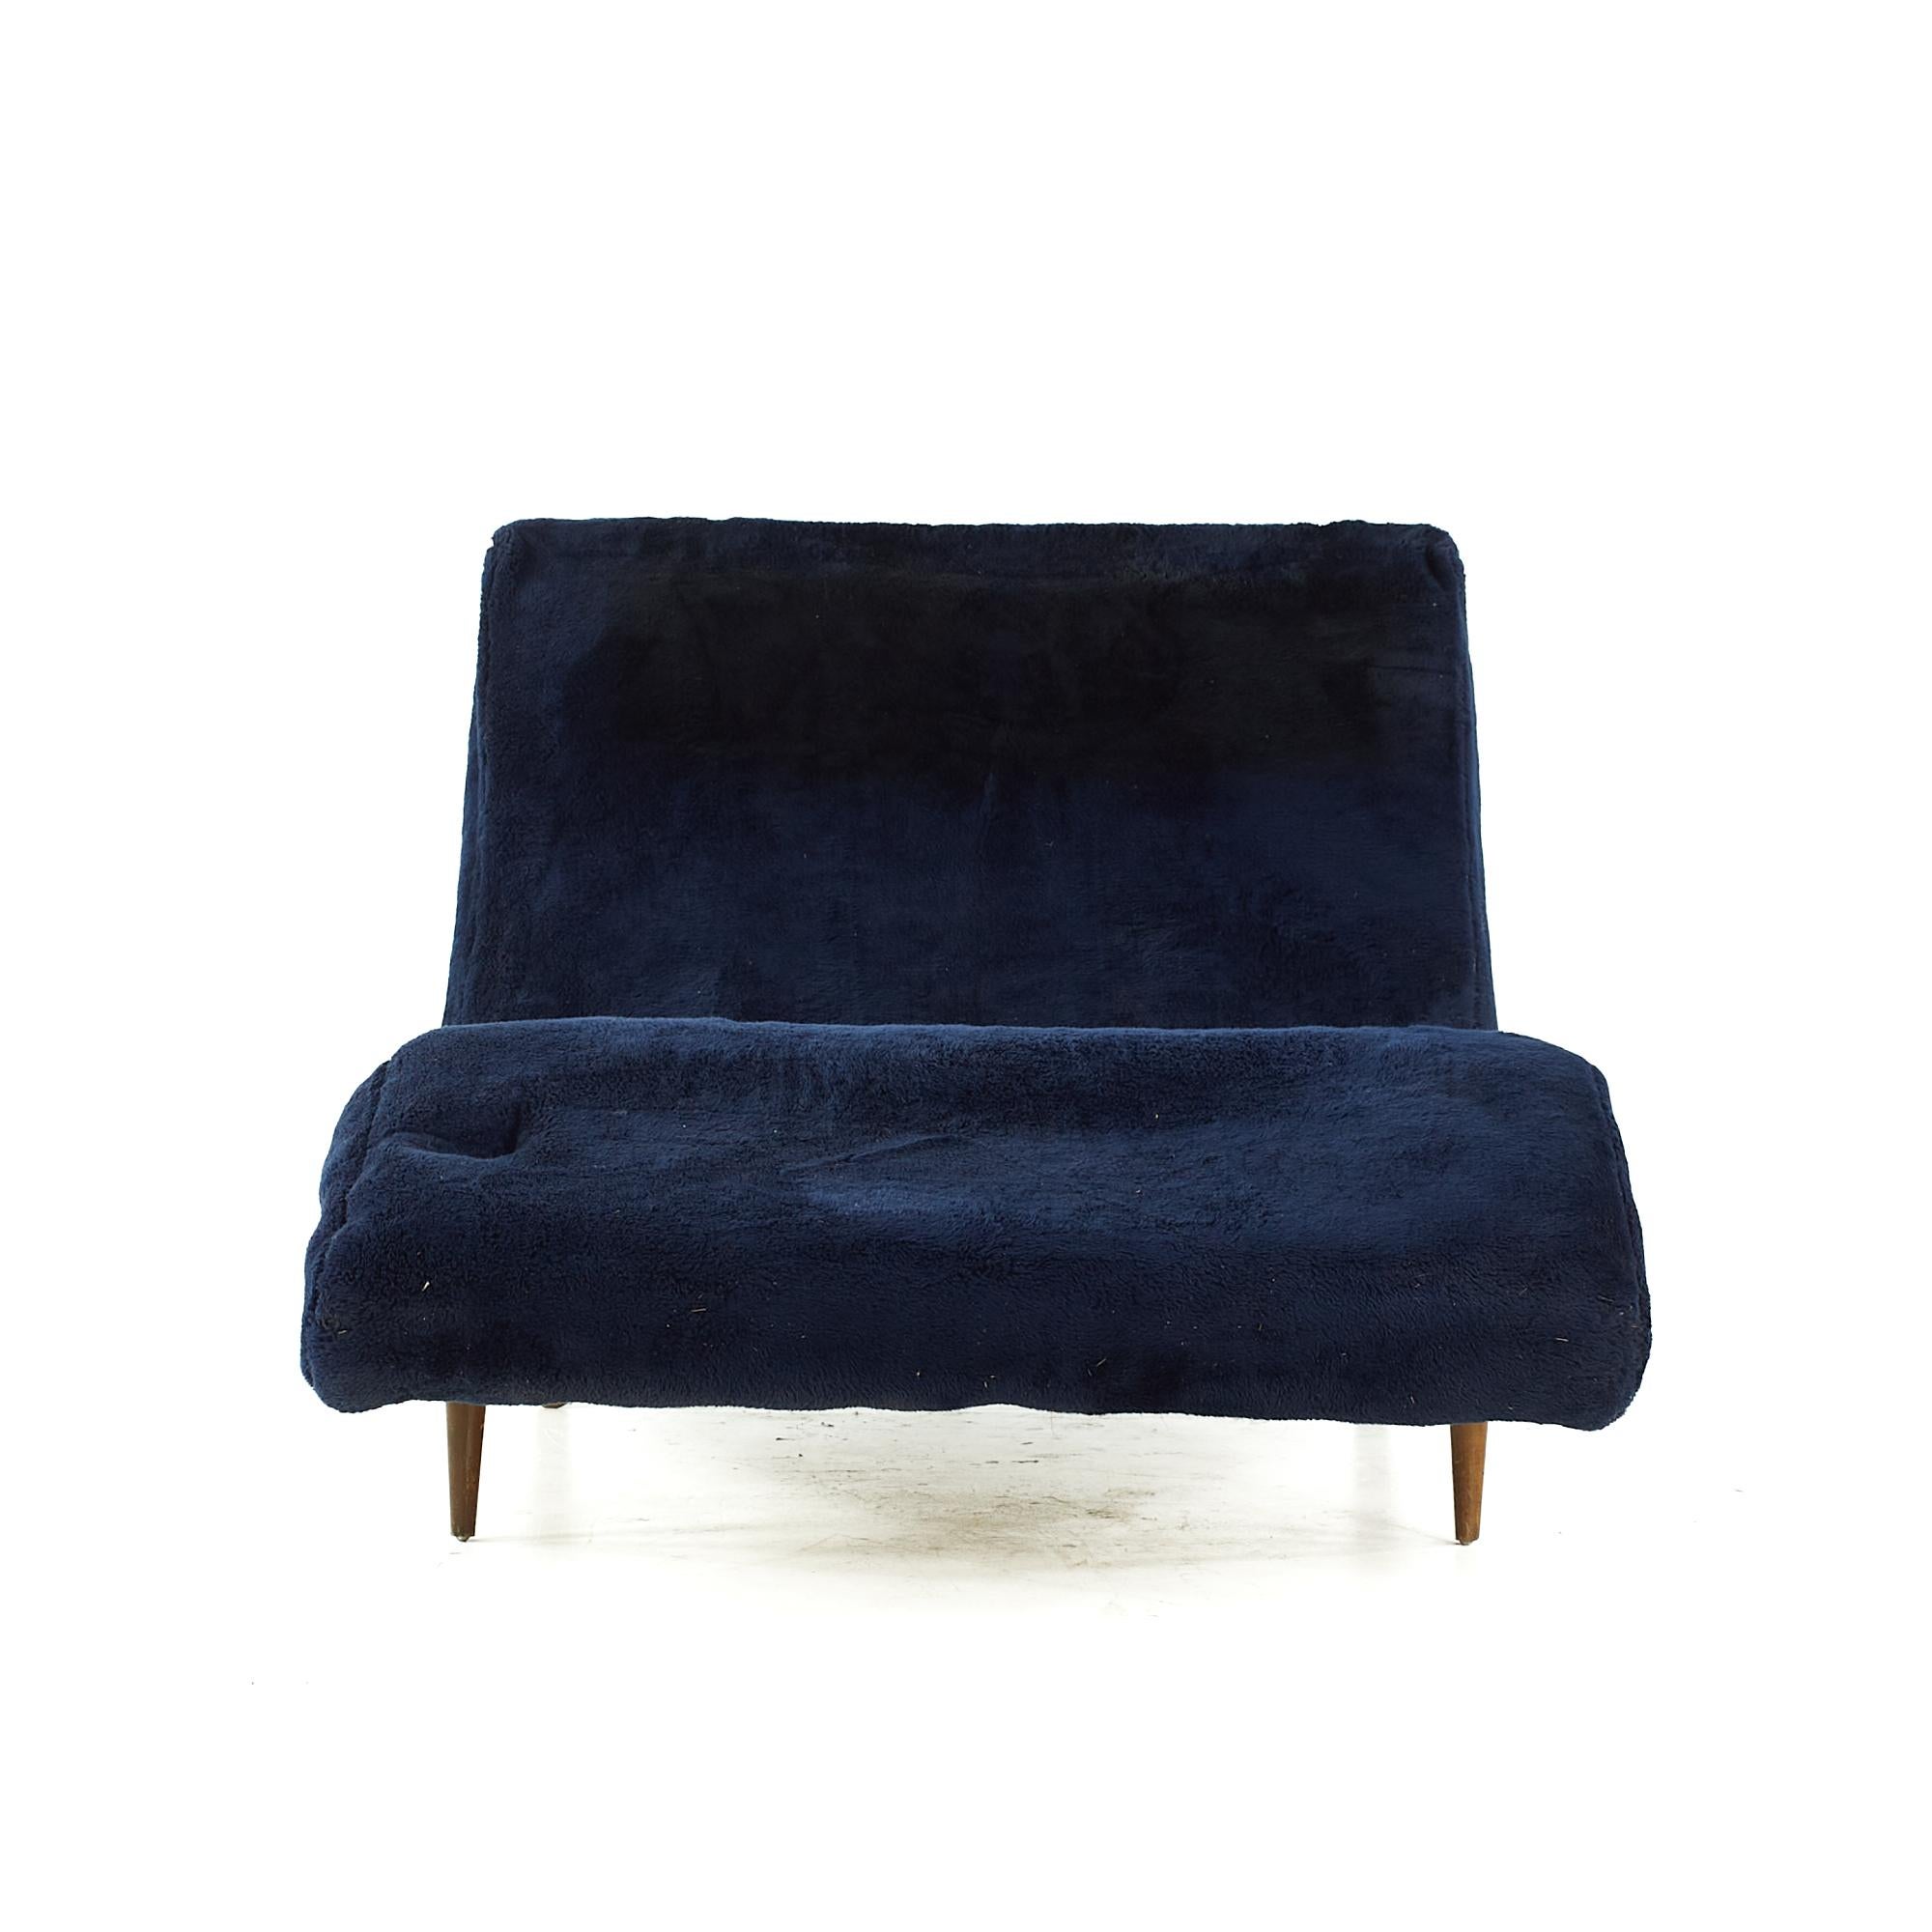 Adrian Pearsall pour Craft Associates Chaise ondulée du milieu du siècle dernier.

Cette chaise mesure : 38 de large x 52 de profond x 30 de haut, avec une hauteur d'assise et un dégagement de 10 pouces.

Tous les meubles peuvent être achetés